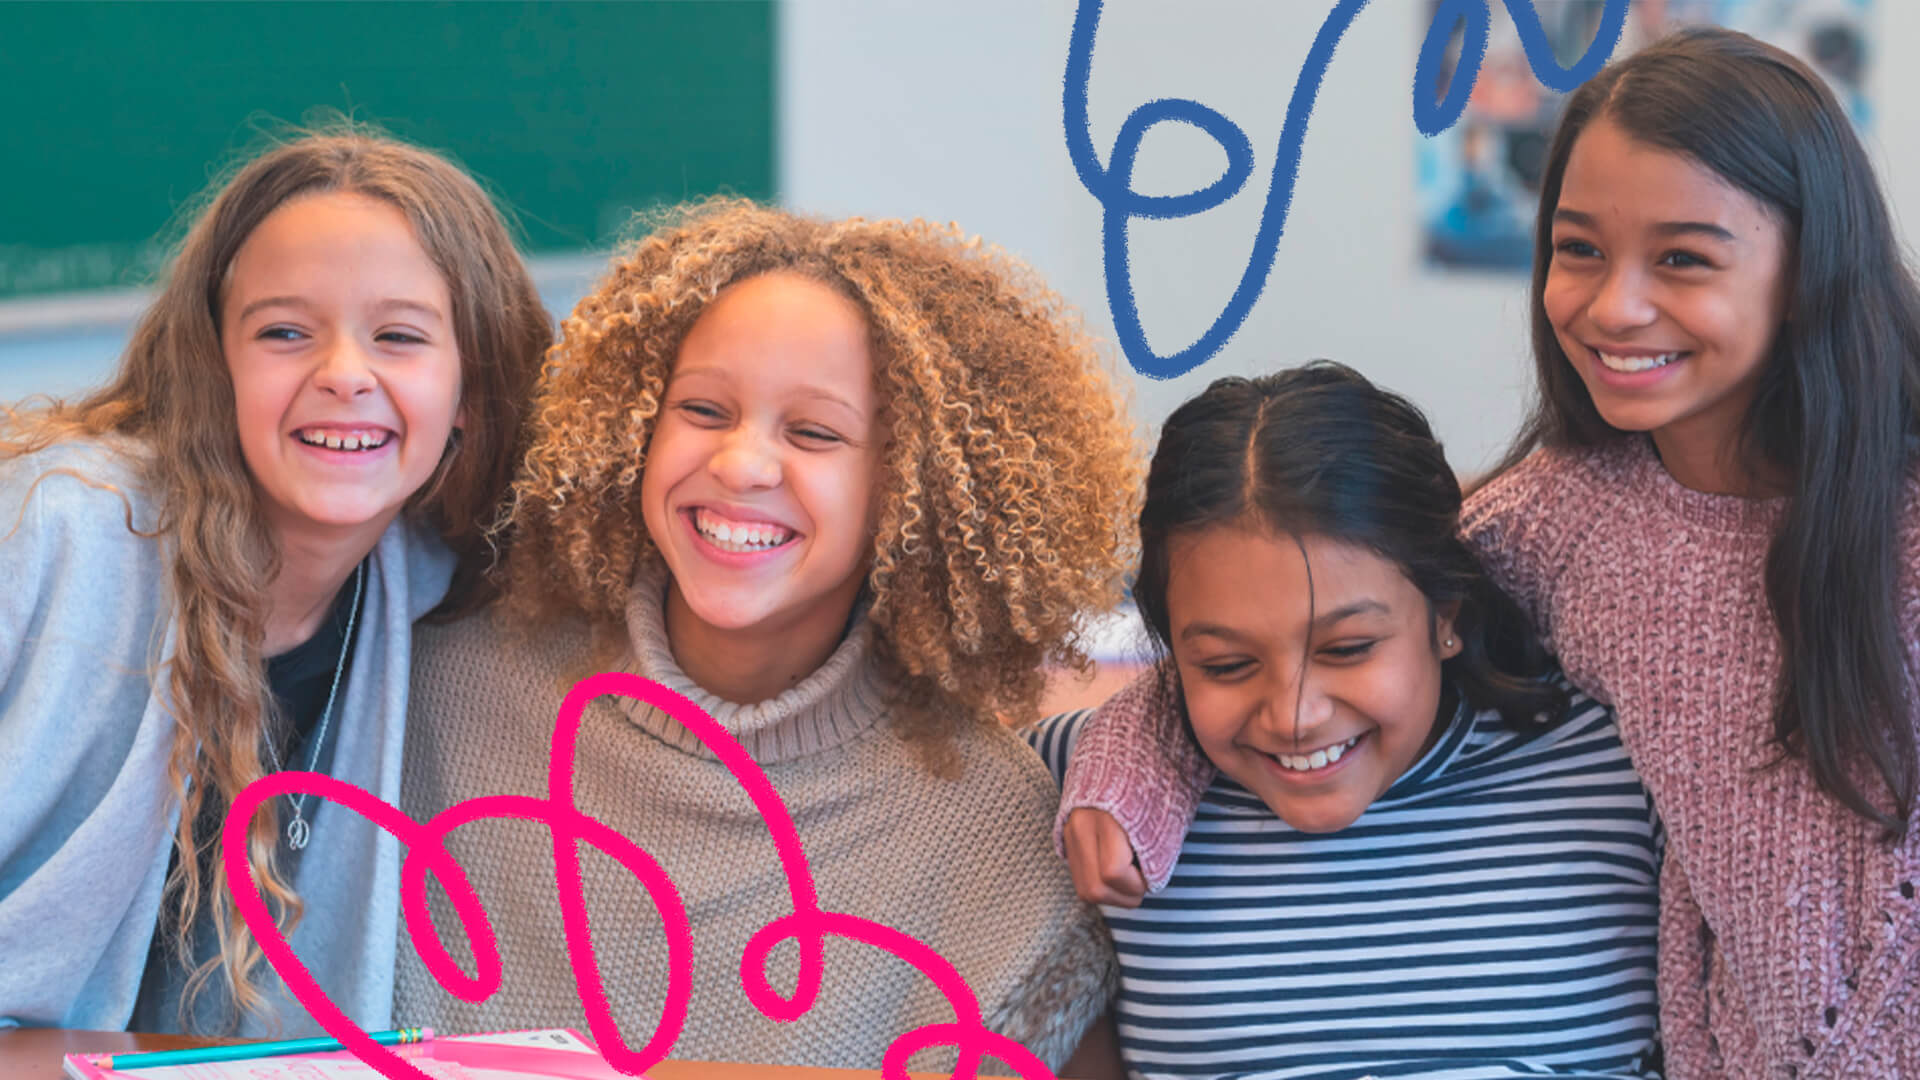 Um grupo multiétnico de quatro meninas em uma sala de aula. Todas sorriem. A imagem possui intervenções de rabiscos coloridos.